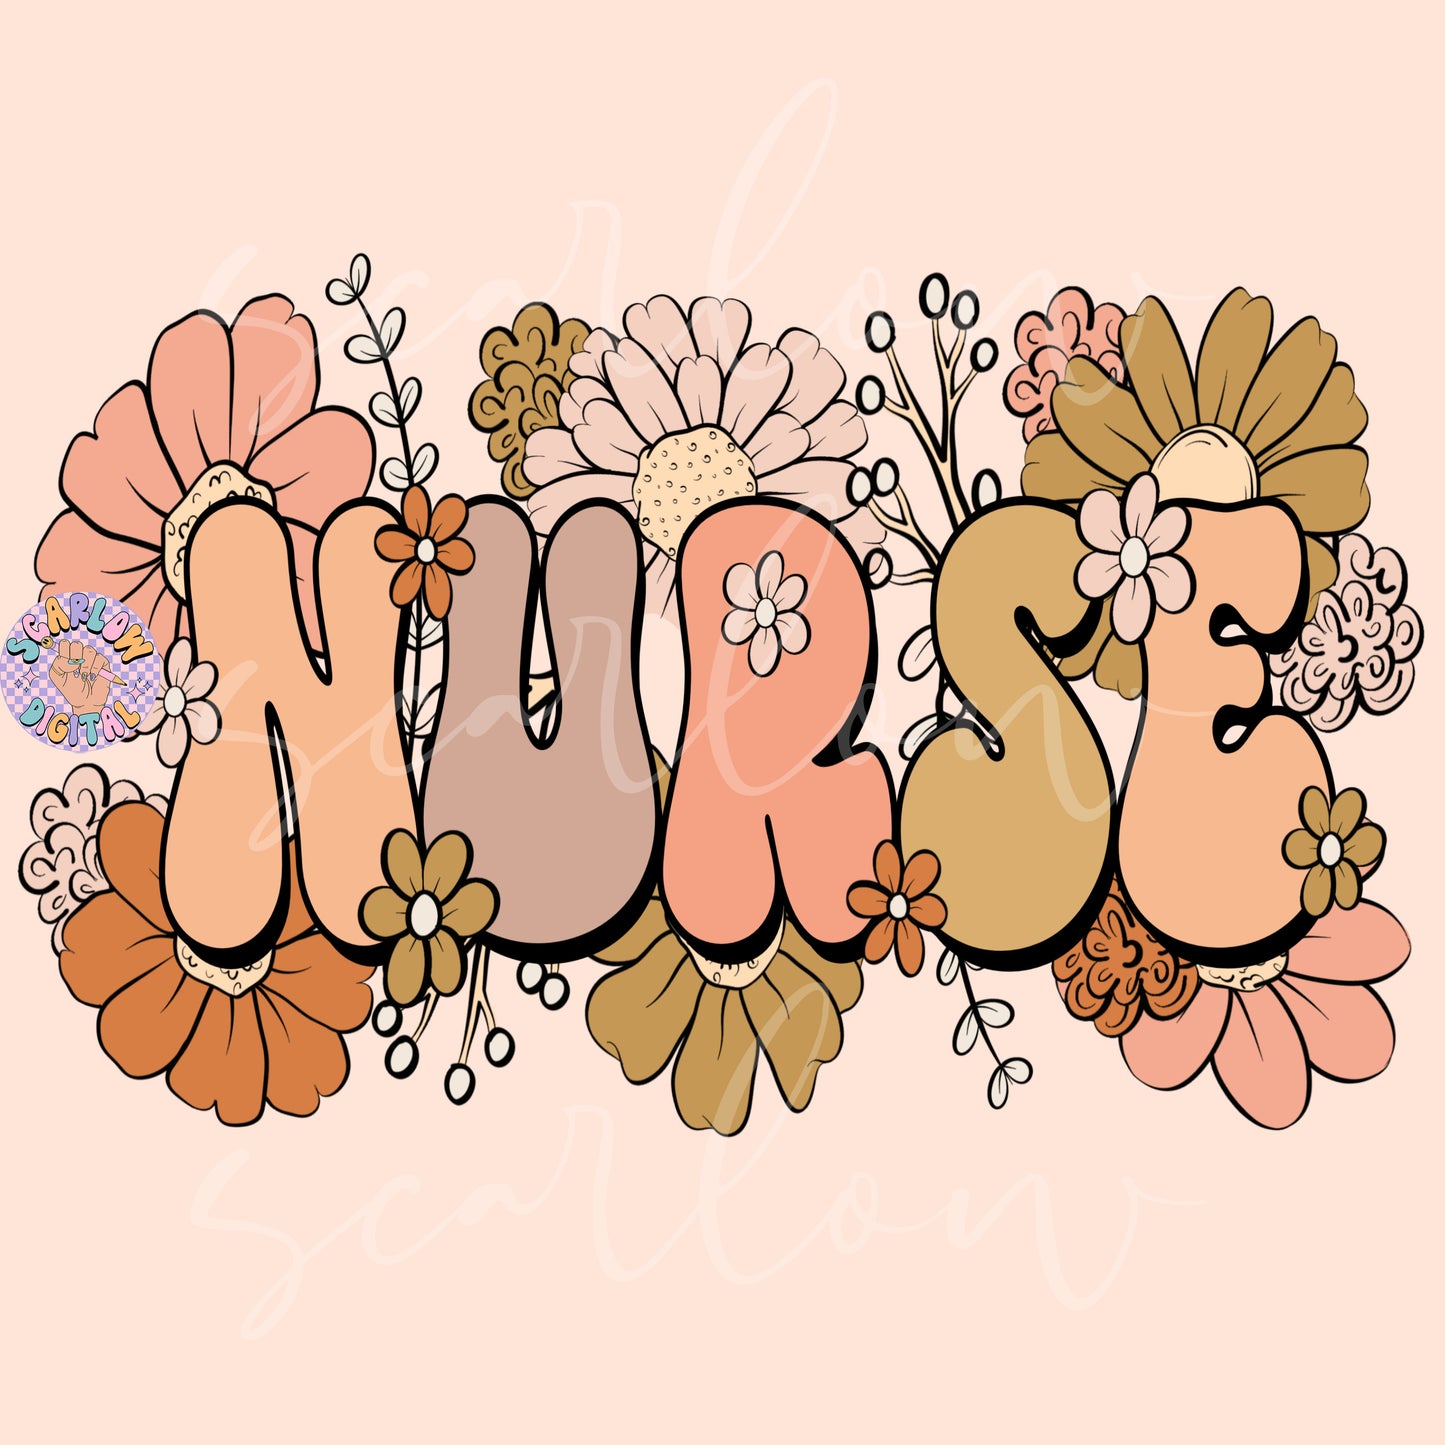 Floral Nurse PNG Sublimation Digital Design Download, flowers png, healthcare png, registered nurse png, png for nurses, trendy nurse png